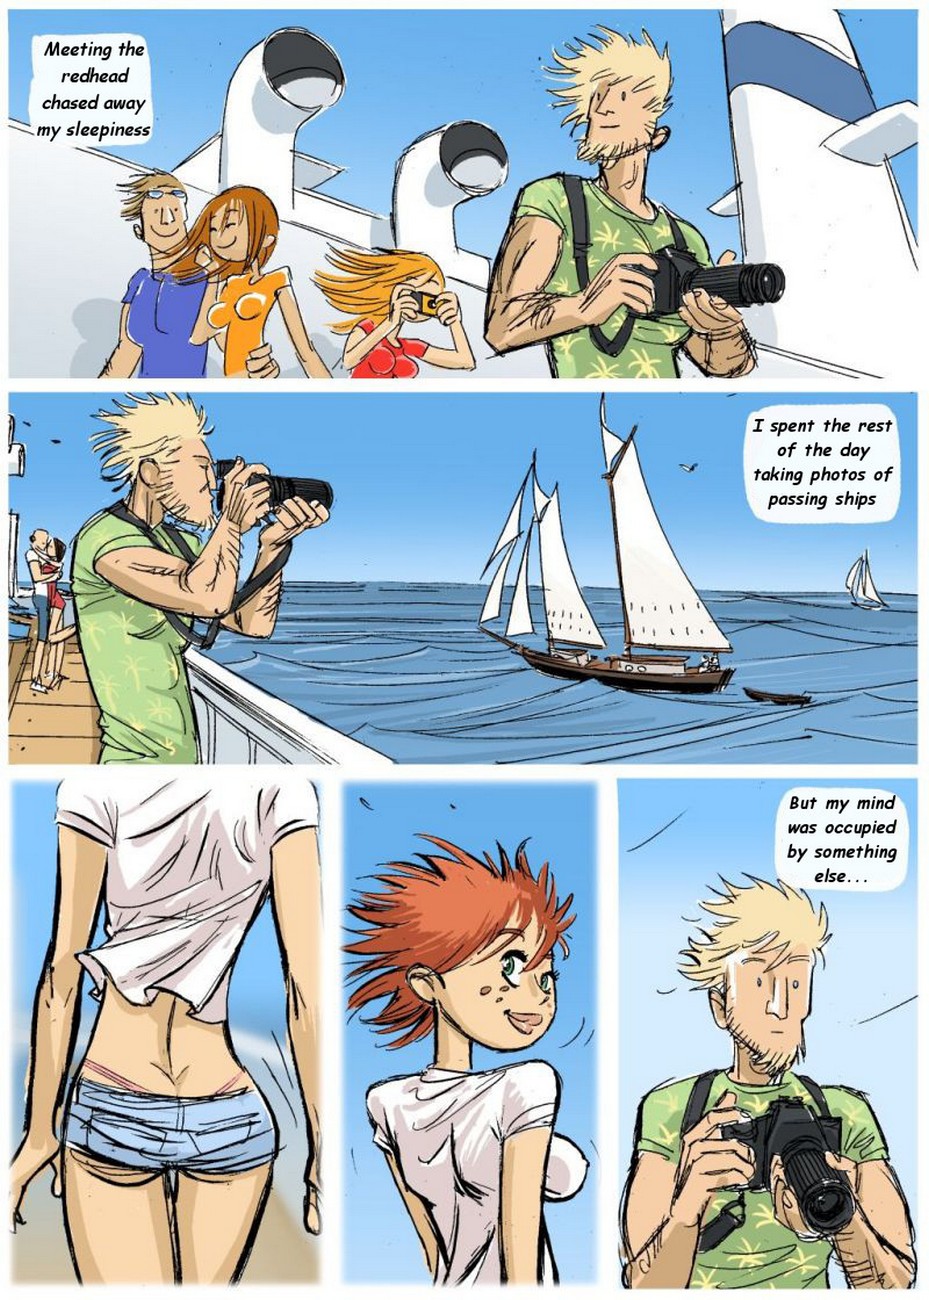 Boat Cartoon Porn - Lust Boat Sex Comic - HD Porn Comics